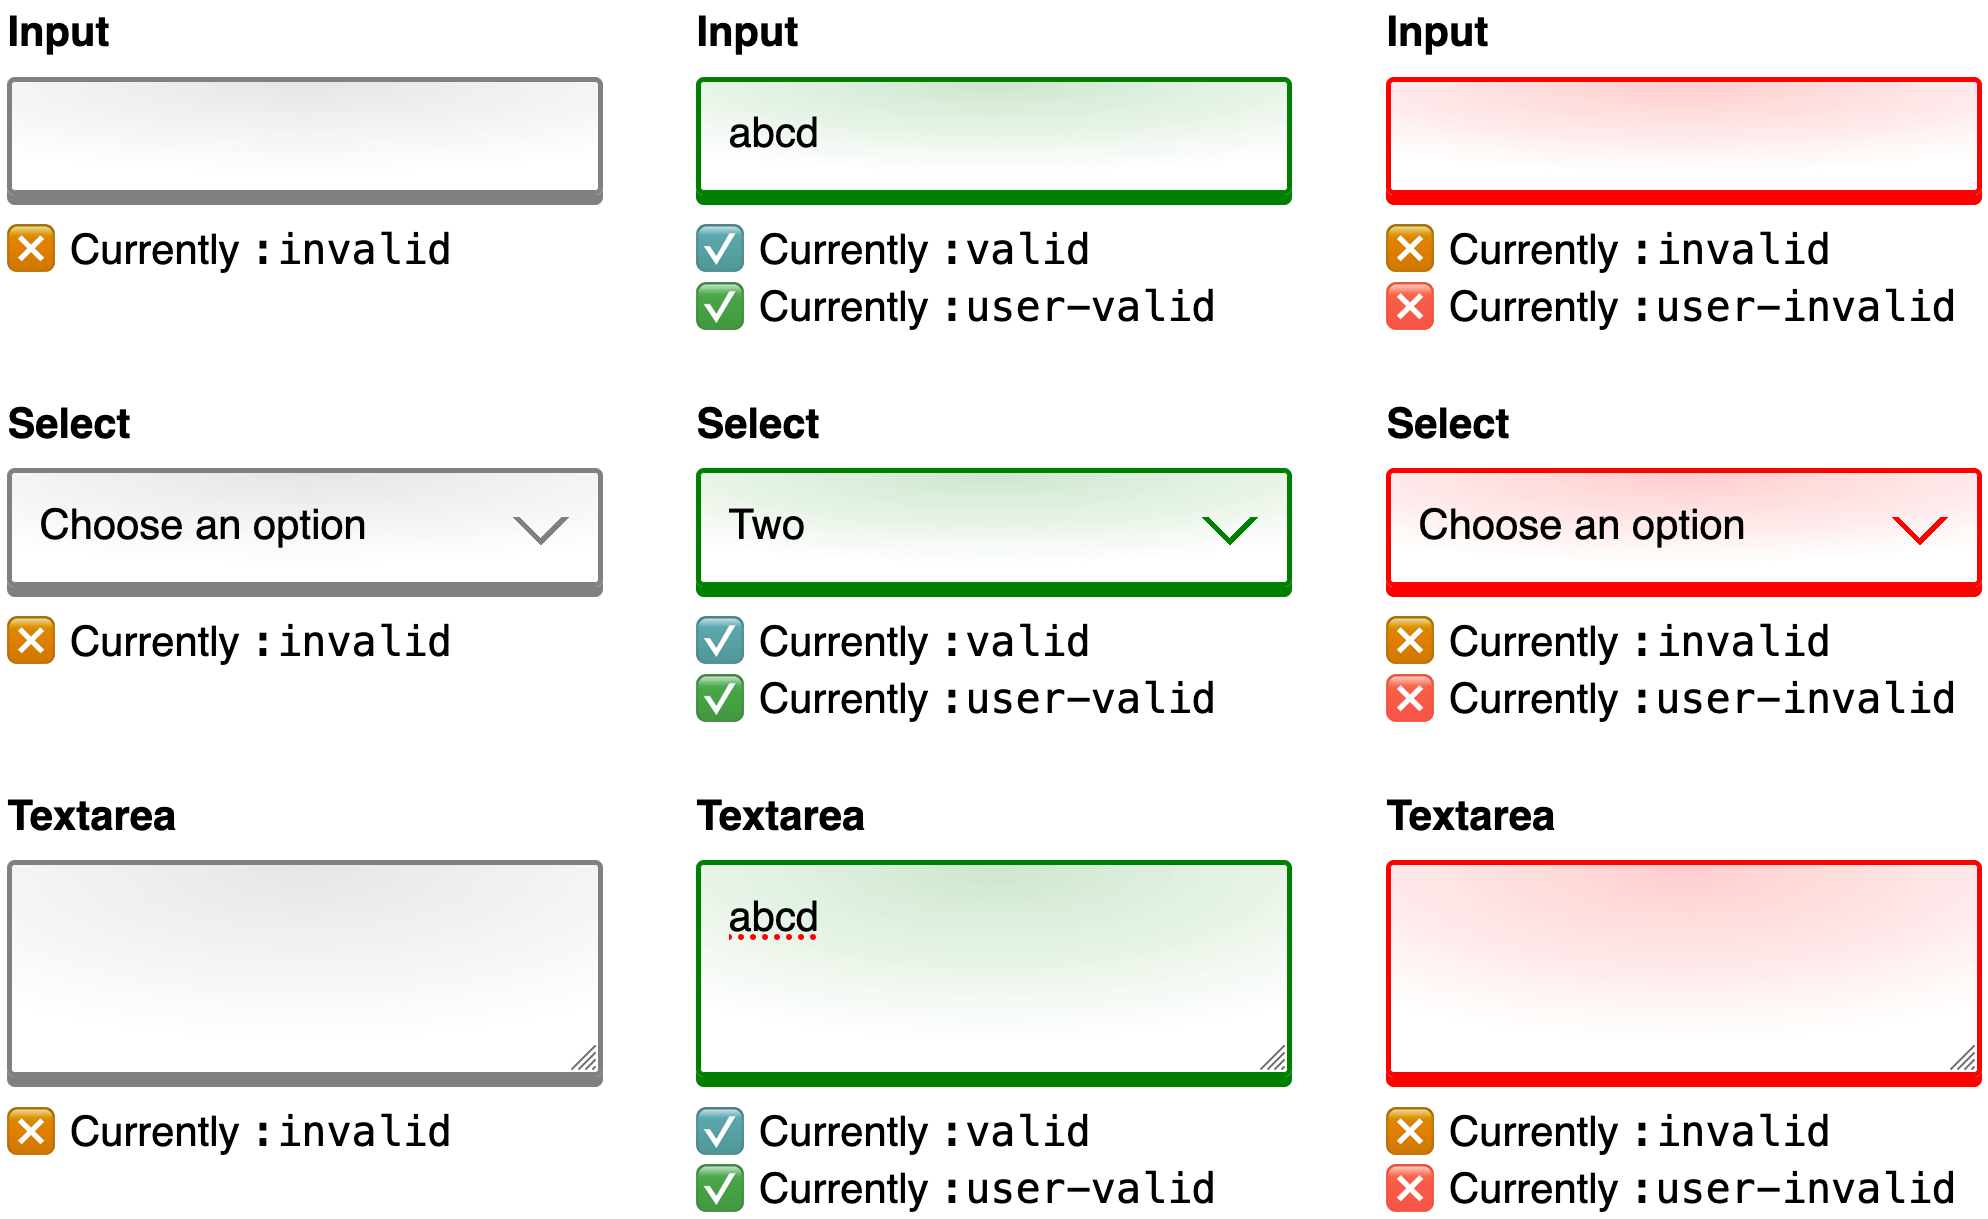 一张由 3 张屏幕截图并排并列进行比较的图片。每张屏幕截图都显示了具有相同输入、选择和文本区域控件的网络表单。第一个屏幕截图显示了表单处于任何用户输入之前的初始状态。控件边框是灰色的，下面的帮助文本说明每个控件当前都与 :invalid 伪类选择器相匹配。第二个屏幕截图显示了用户为每个控件提供输入后同一表单的情况。控件边框是绿色的，并且下面的帮助文本说明了每个控件当前都与 :valid 和 :user-valid 伪类选择器匹配。第三个屏幕截图（也是最后一个屏幕截图）显示了用户移除所有输入内容后看到的同一表单。控件边框是红色的，下面的帮助文本还说明了每个控件目前都同时匹配 :invalid 和 :user-invalid 伪类选择器。